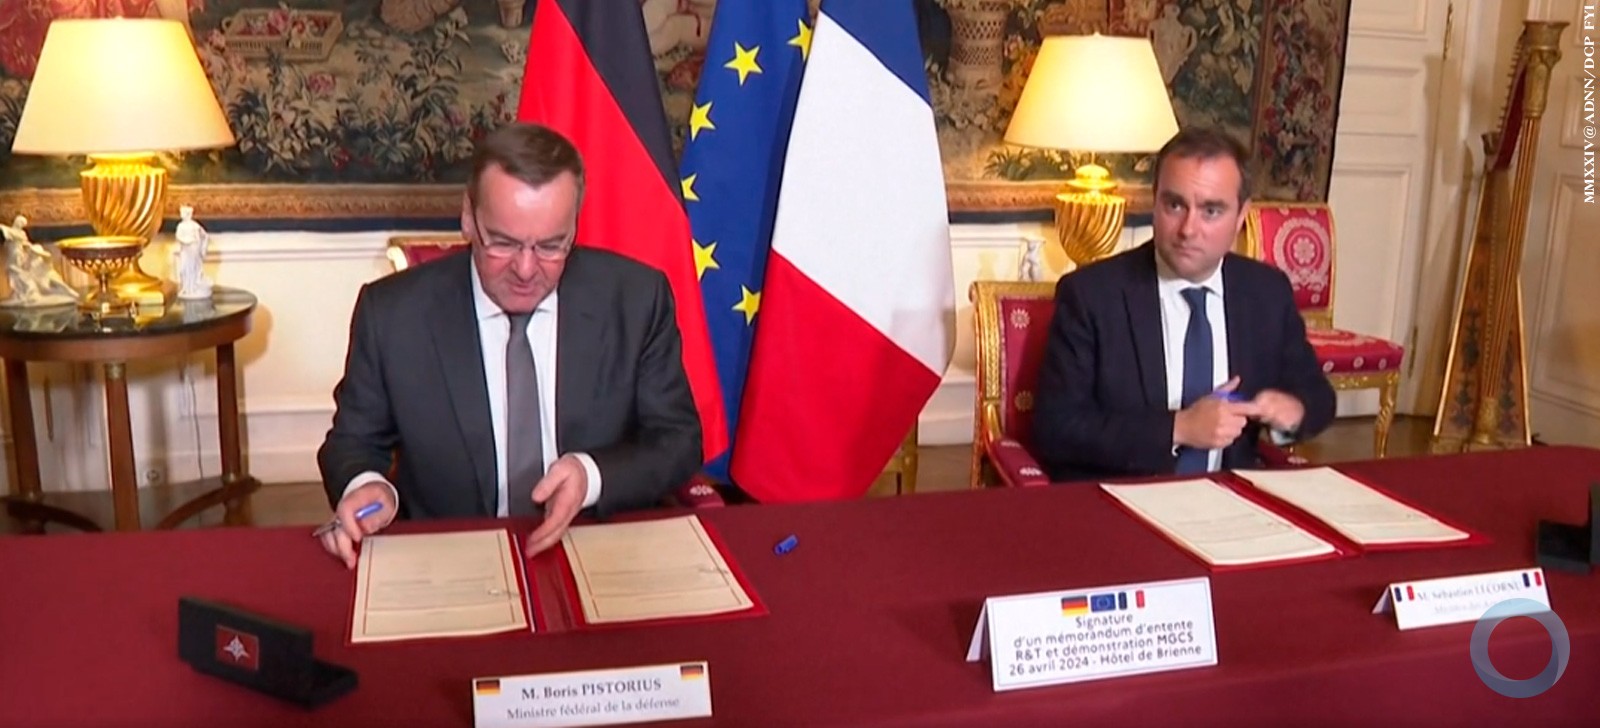 França e Alemanha assinam acordo para desenvolver 'tanque do futuro'.